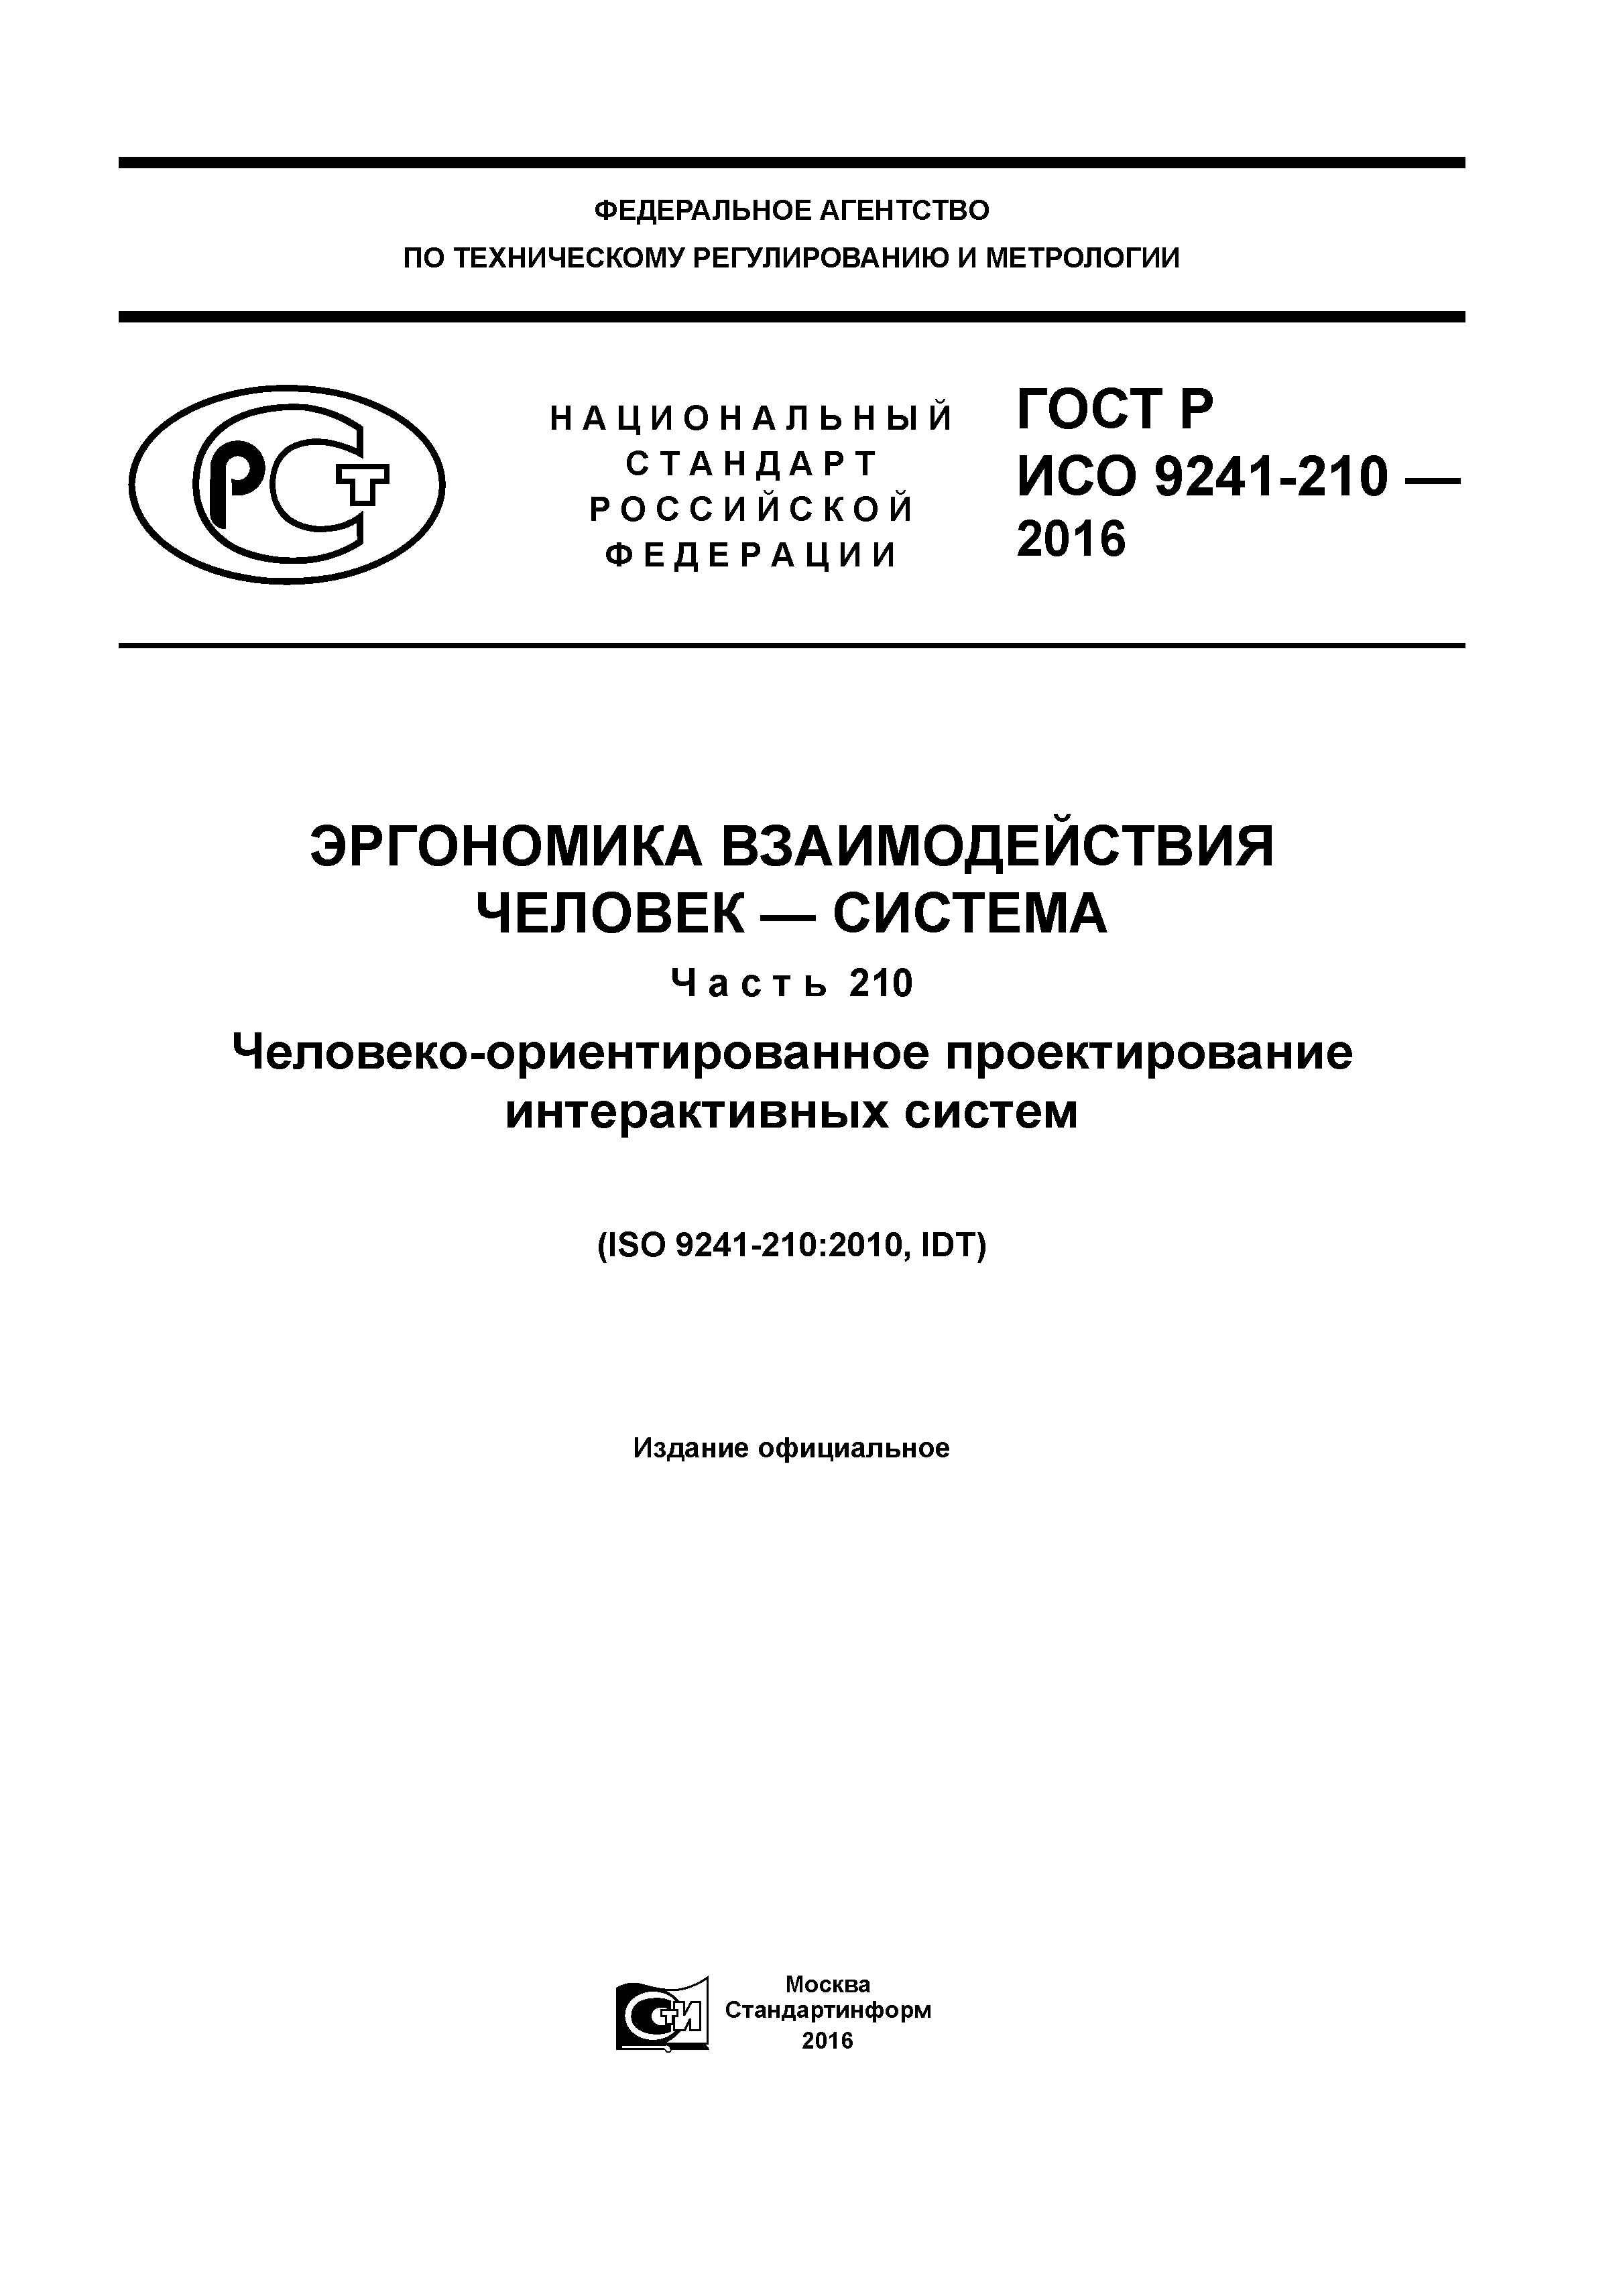 ГОСТ Р ИСО 9241-210-2016